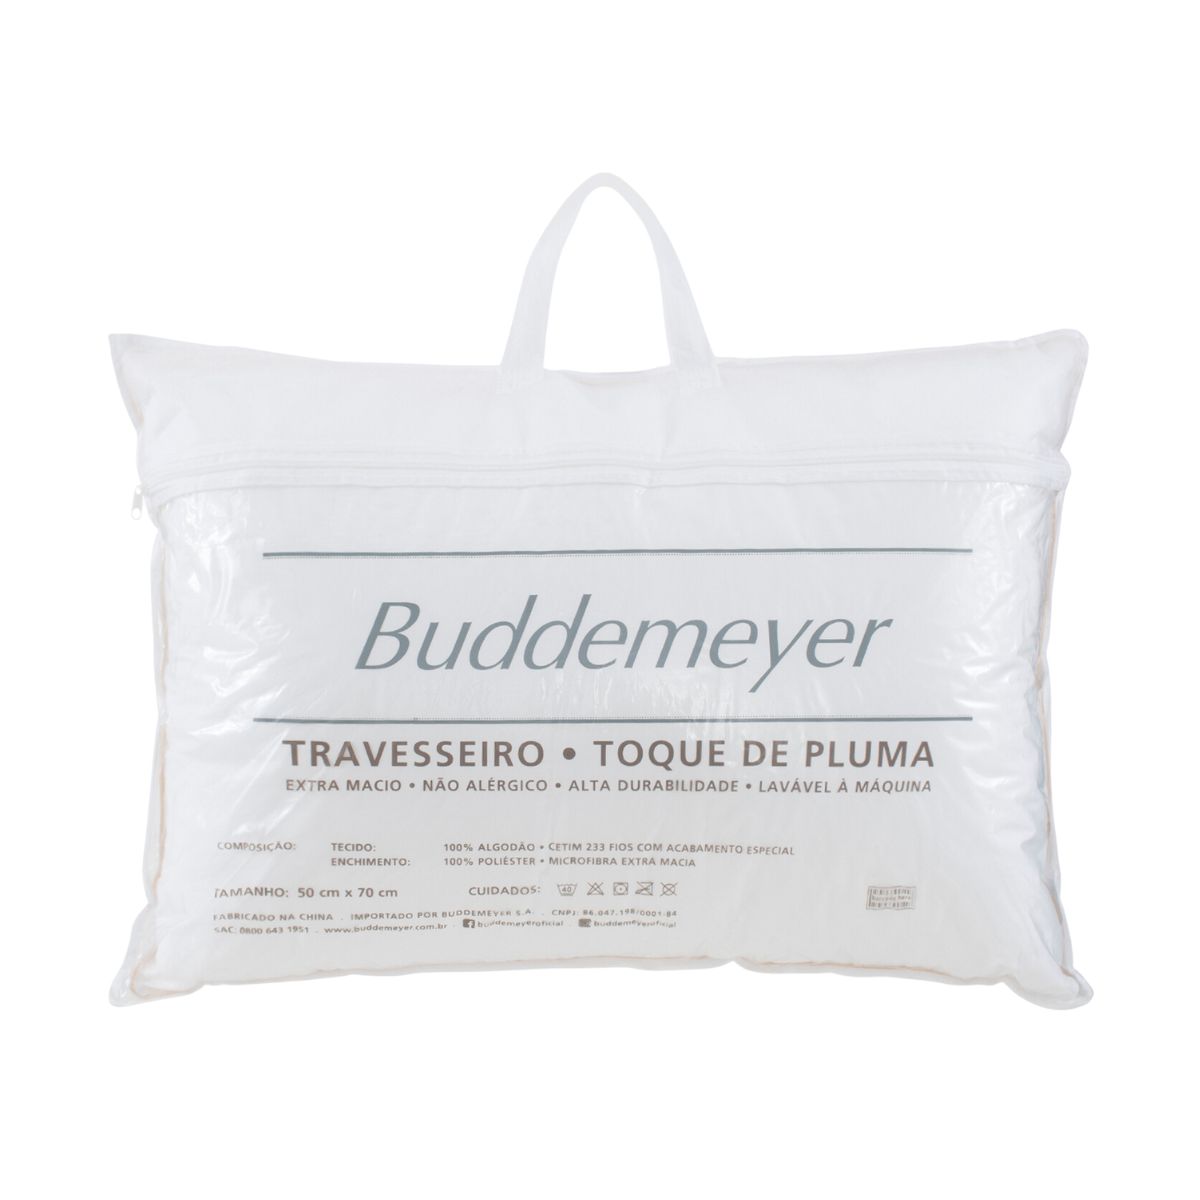 Travesseiro Buddemeyer Toque de Pluma 100% Algodão 233 Fios 50x70cm